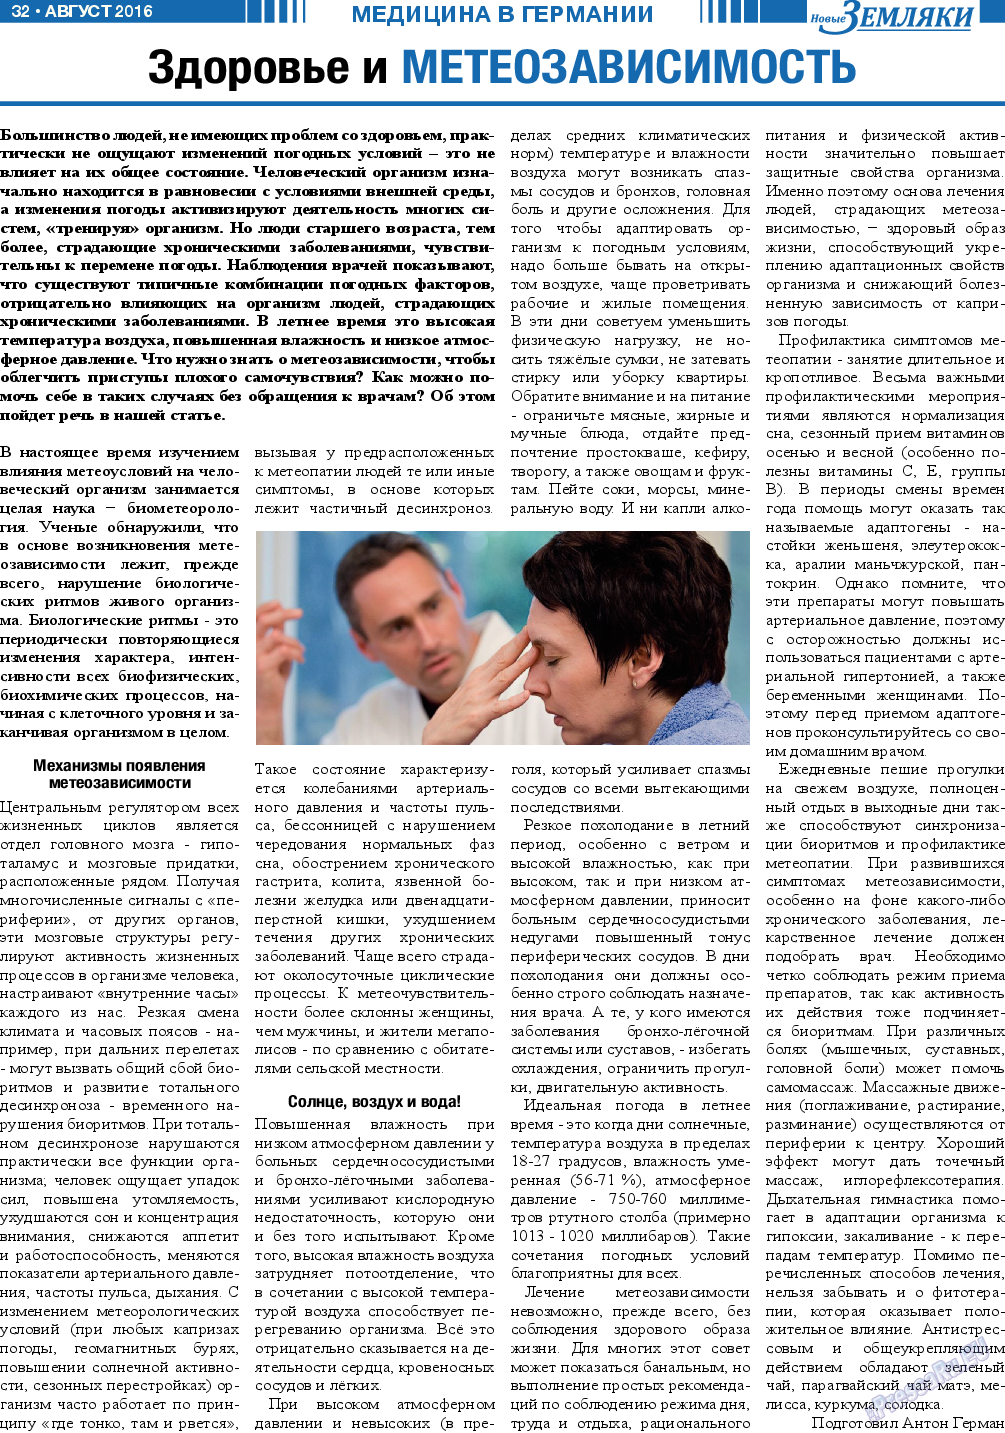 Новые Земляки, газета. 2016 №8 стр.32